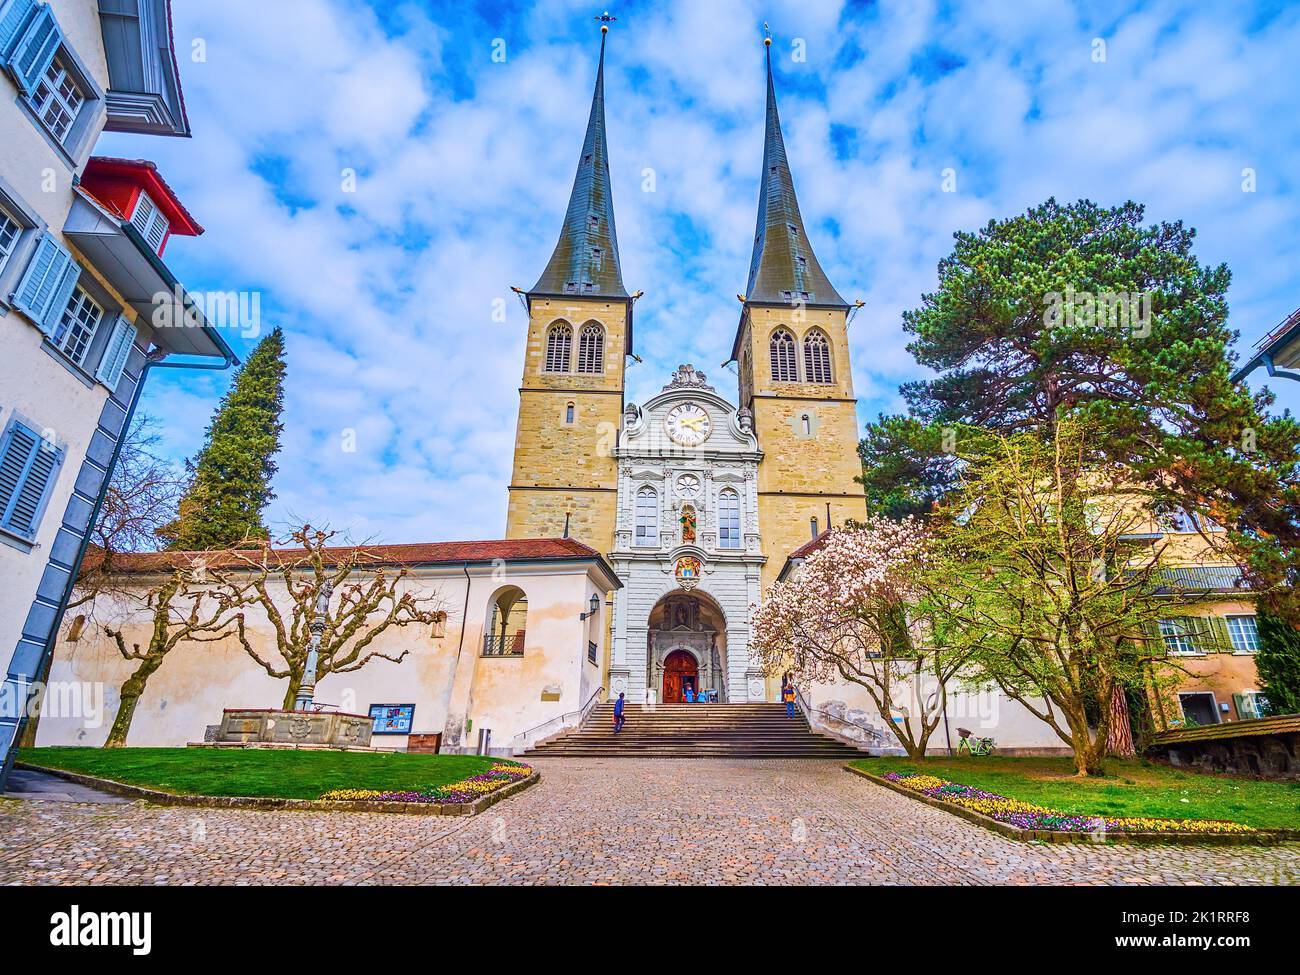 La chiesa parrocchiale di San Leodegar im Hof, con le sue torri gemelle, è il simbolo della città di Lucerna, in Svizzera Foto Stock